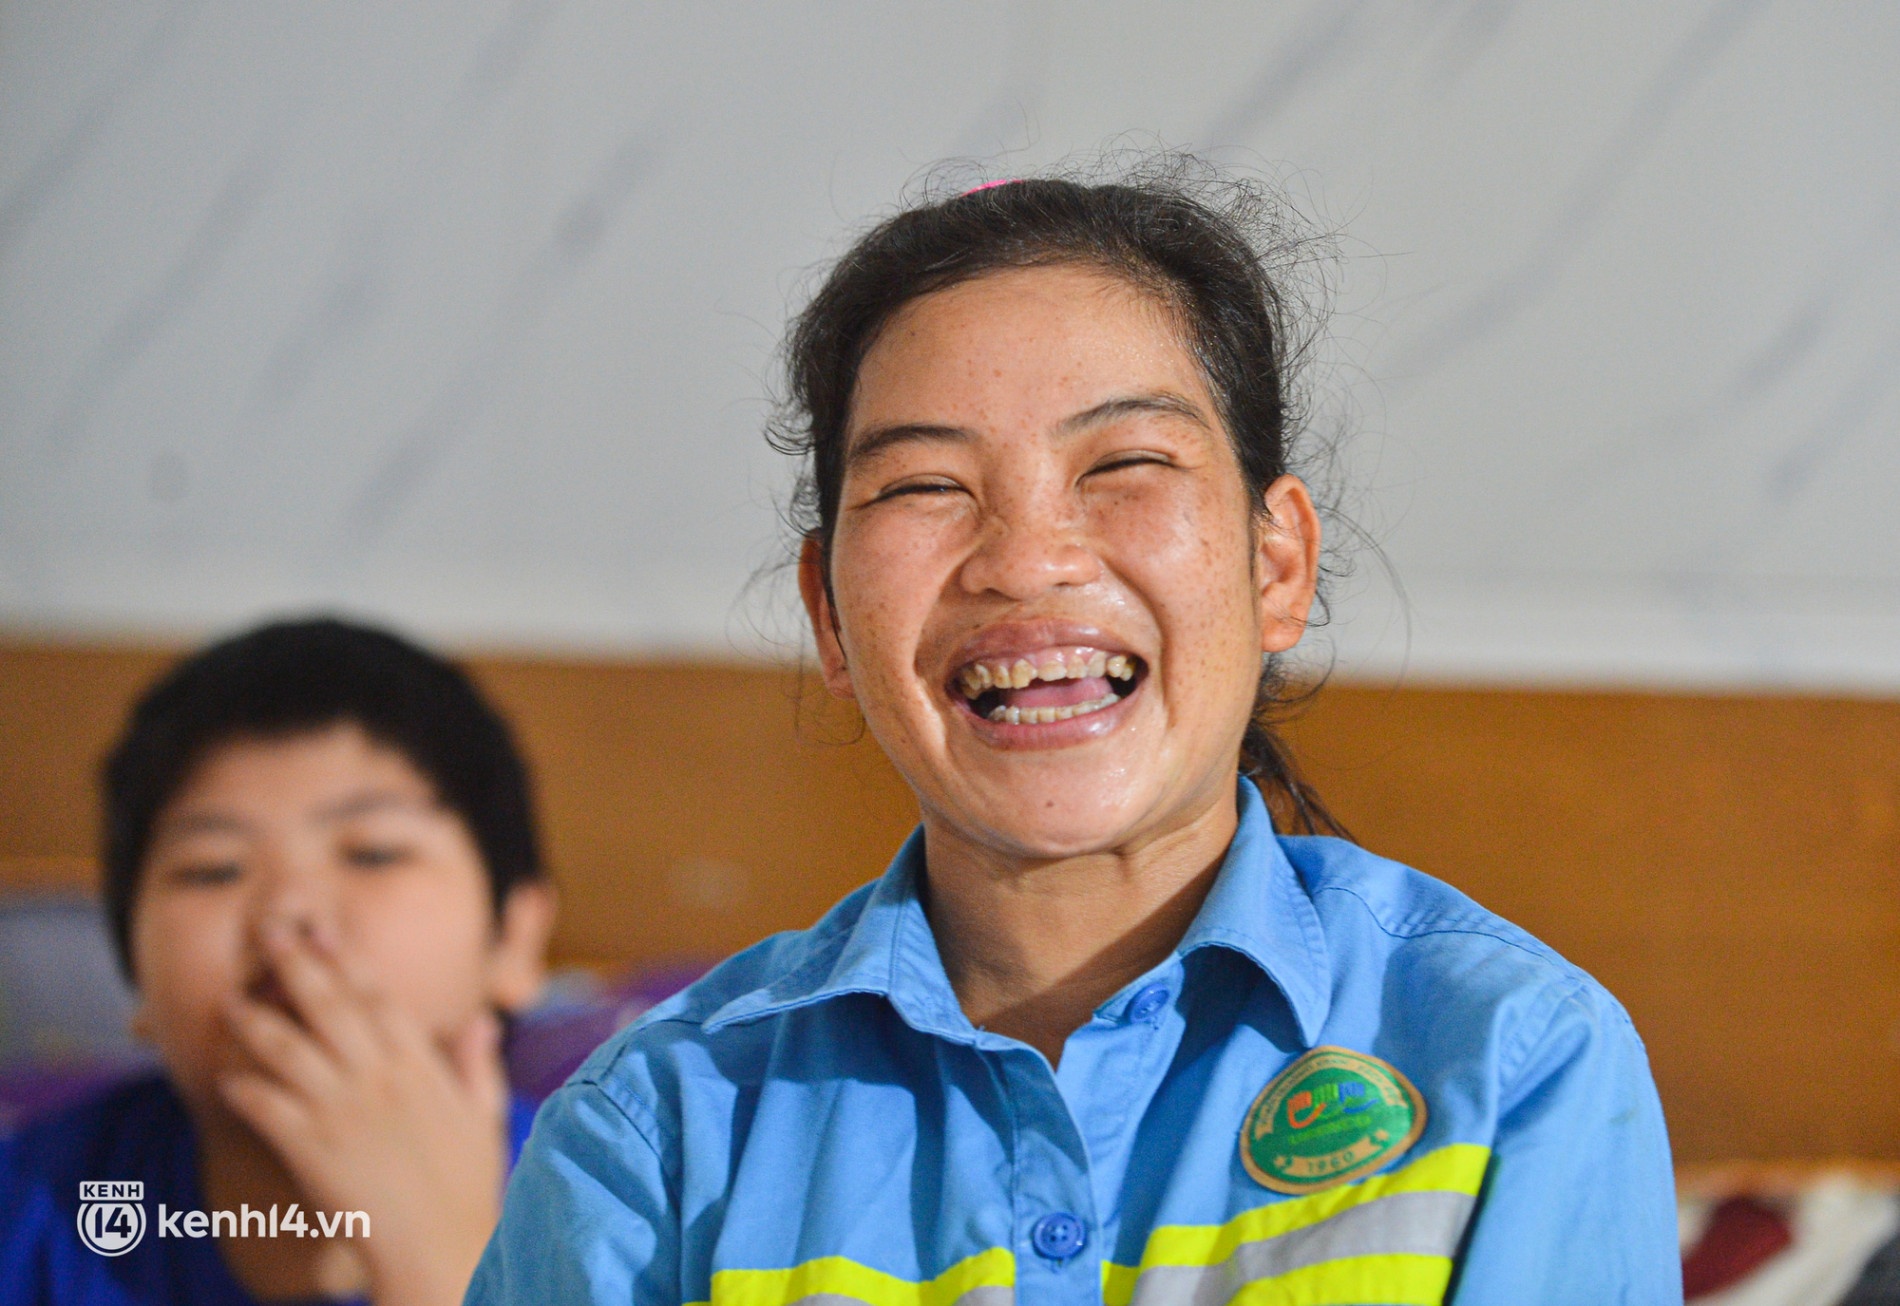 Nụ cười trở lại với những công nhân môi trường bị nợ lương ở Hà Nội: Đi làm vào ngày Tết được người dân chúc mừng, lì xì cũng hạnh phúc lắm - Ảnh 8.